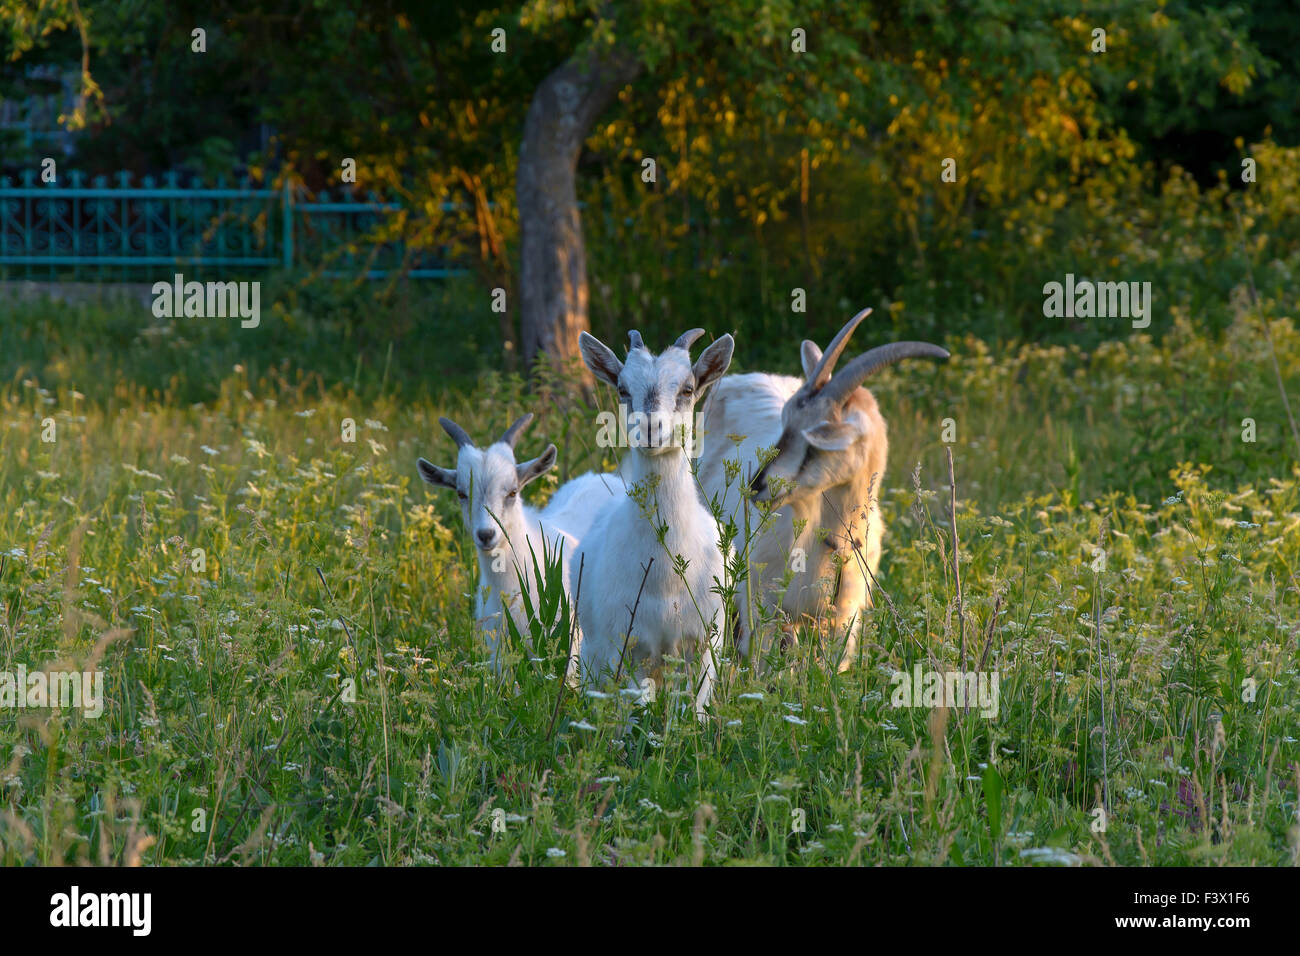 Ziege und junge Ziegen weiden auf grünen Rasen Stockfoto